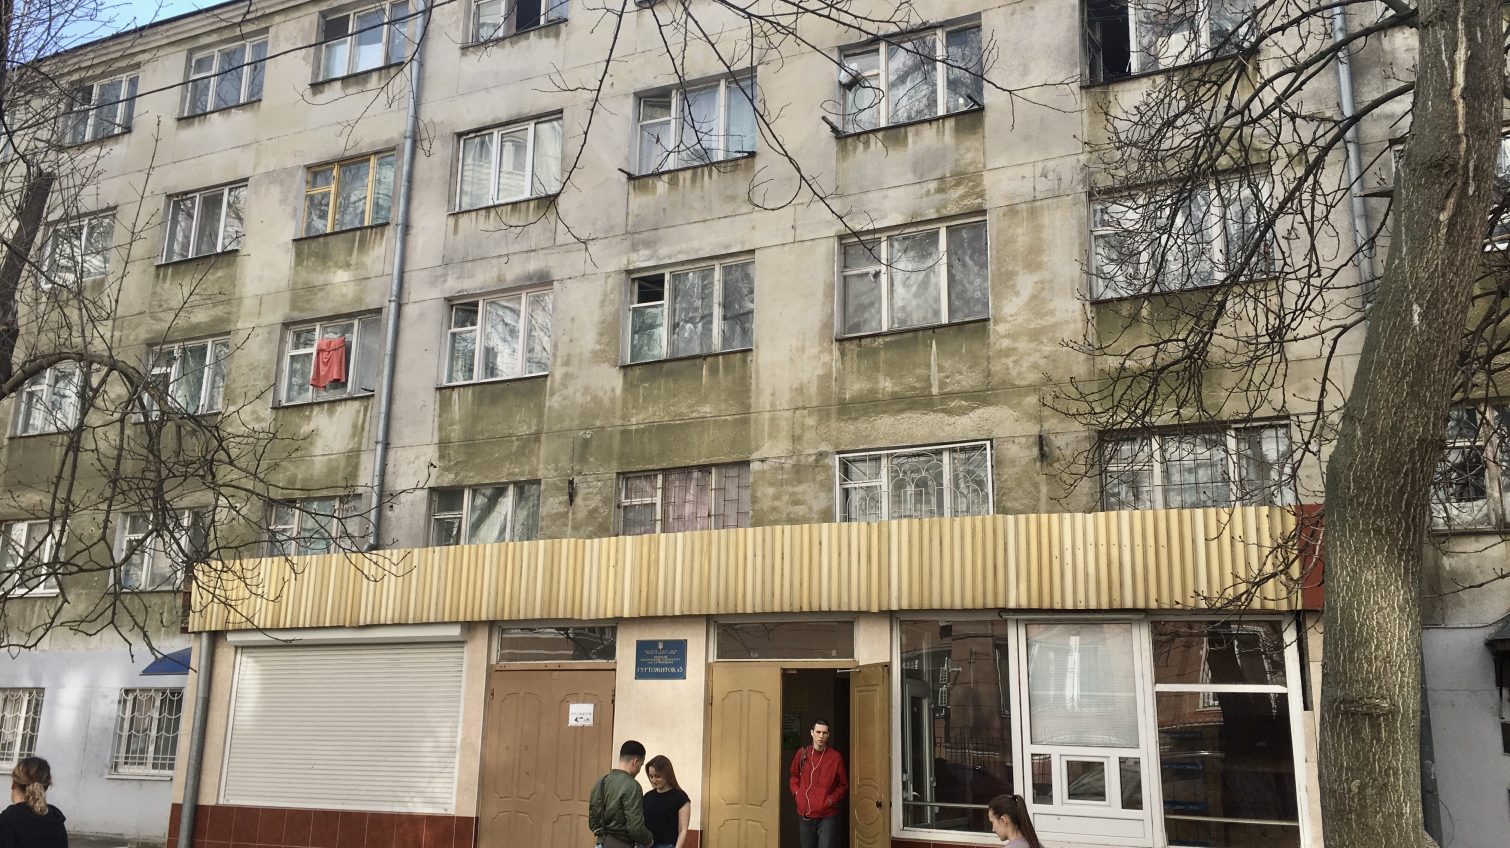 Гроб для горячей воды: одесские студенты протестуют против отключений тепла и воды в общежитиях (фото, видео) «фото»